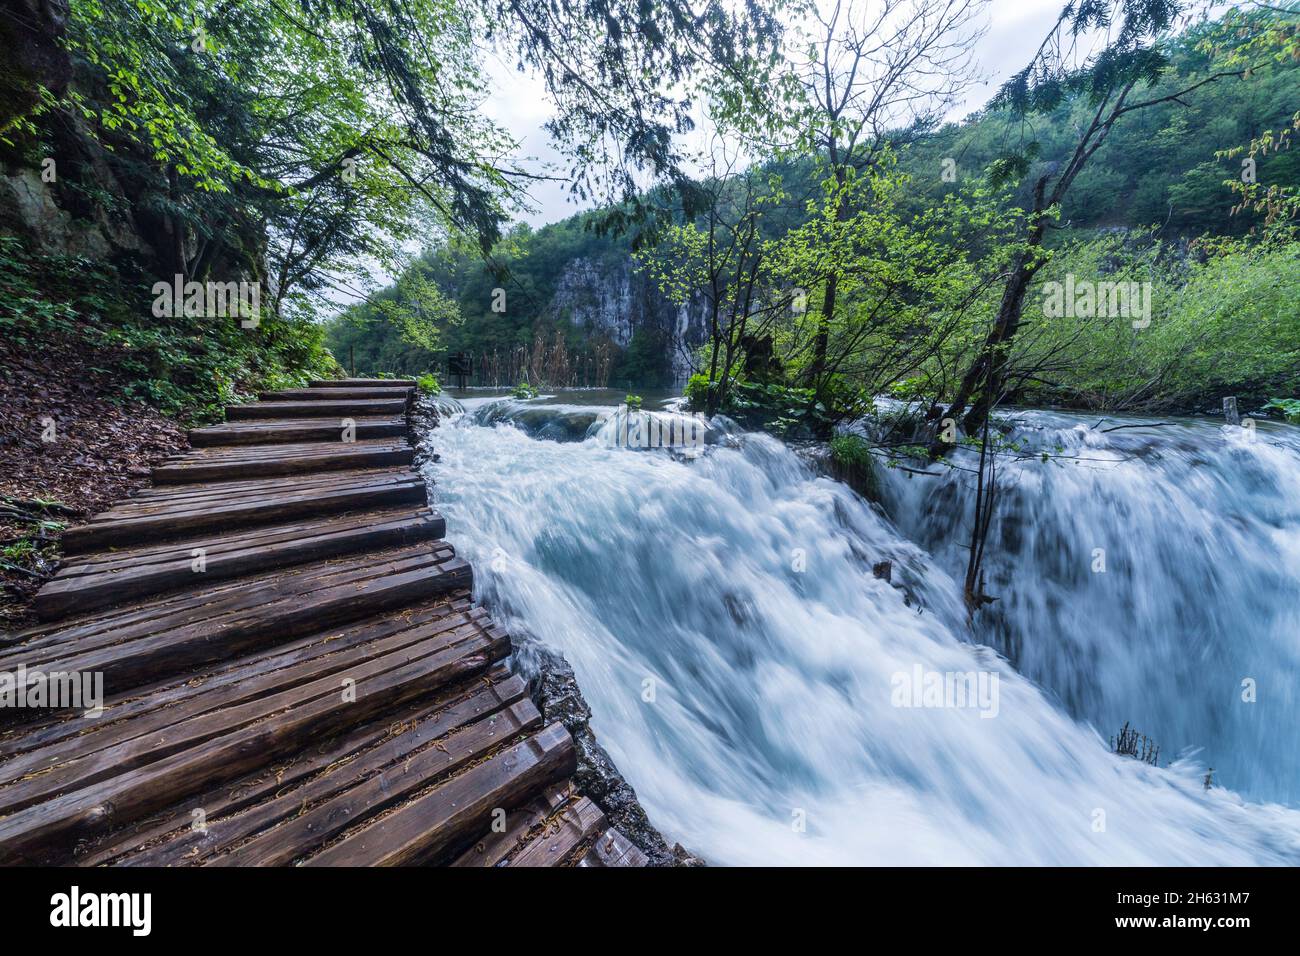 una pasarela de madera rodeada de árboles, cascadas y vegetación en el parque nacional plitvice, croacia Foto de stock